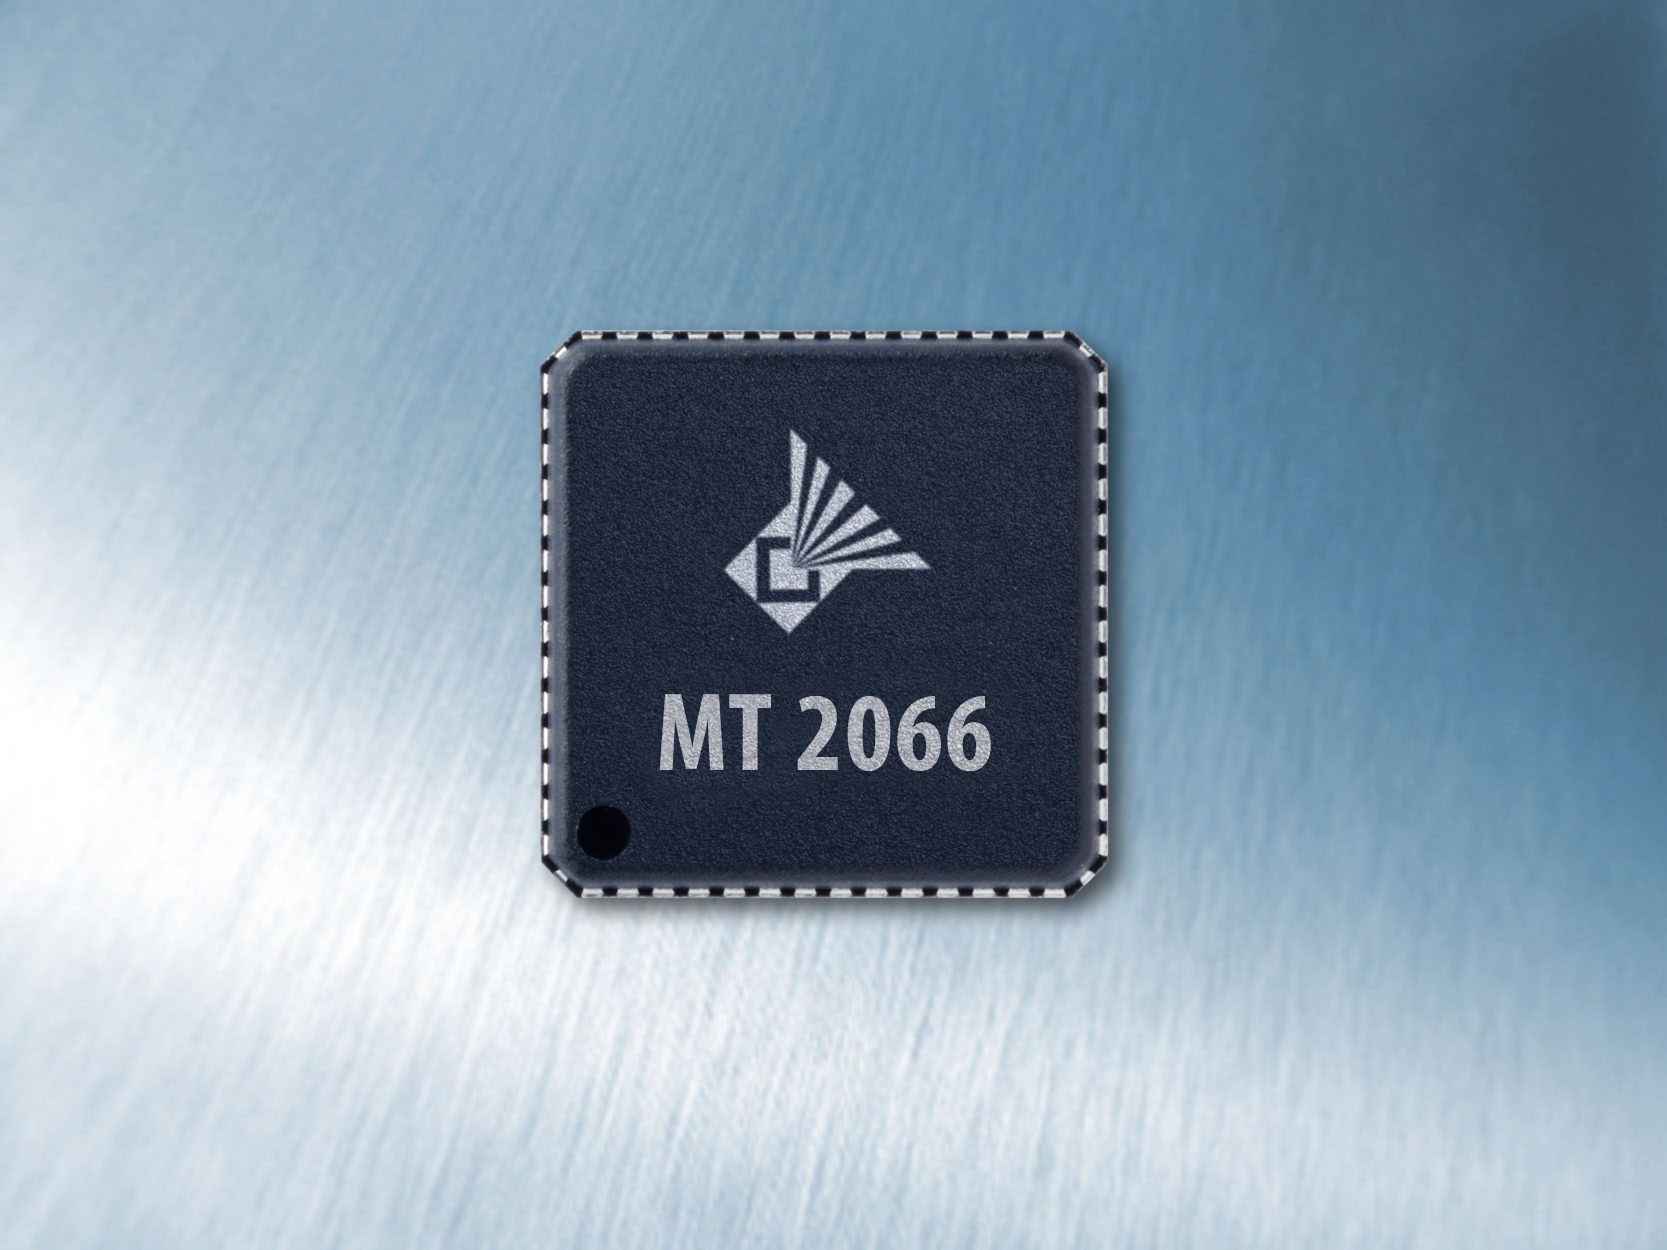  MT2066调谐器芯片